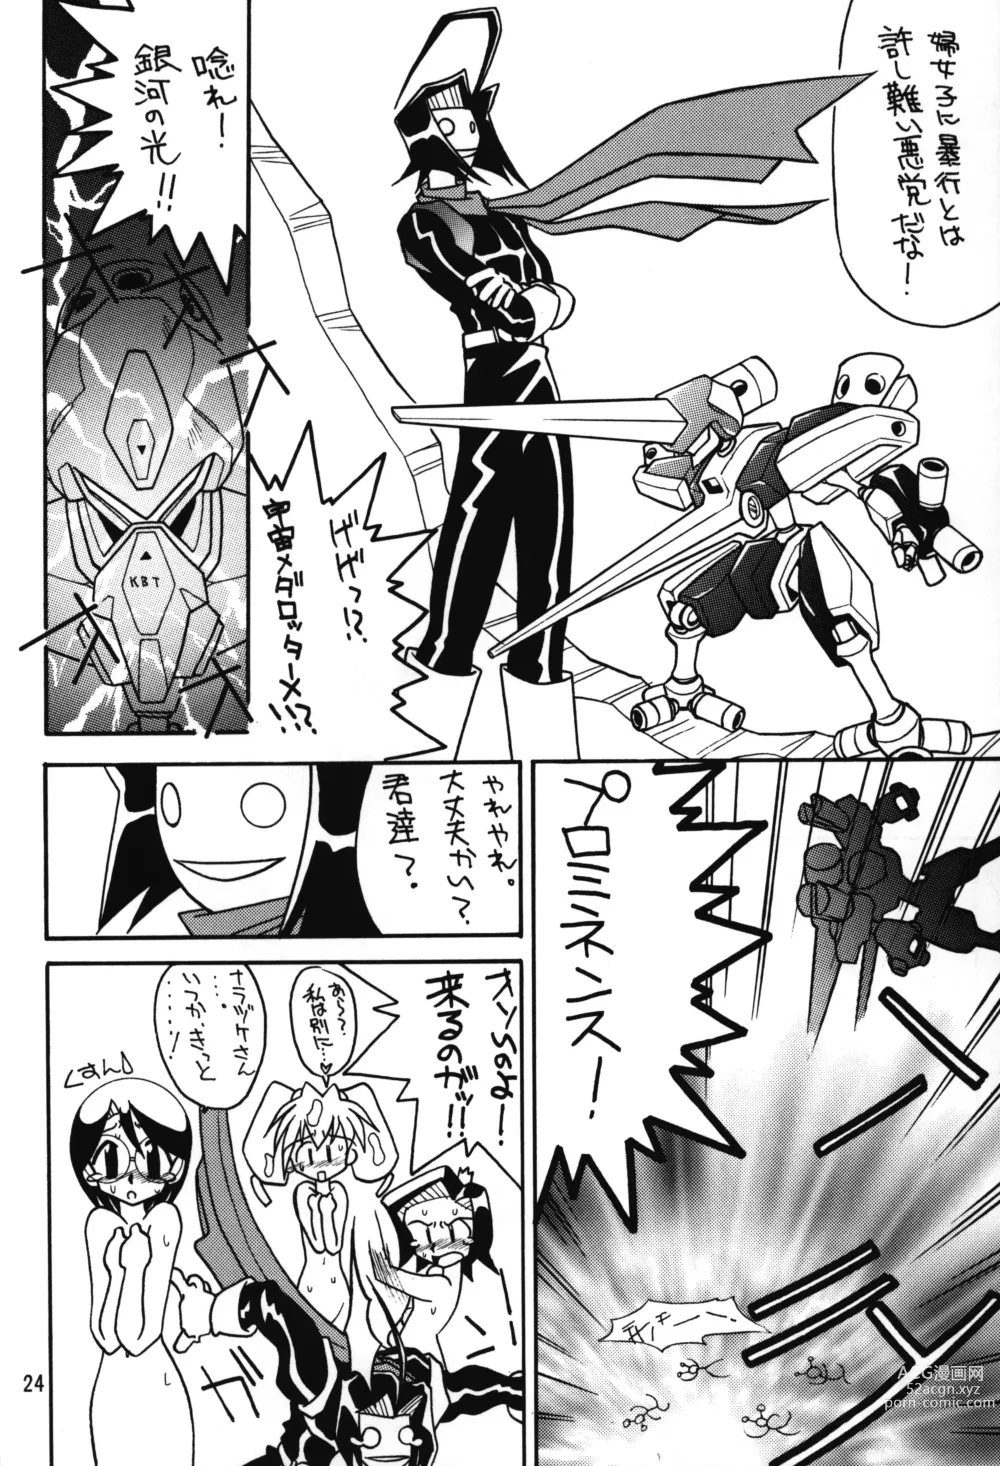 Page 23 of doujinshi Medabot to Tatami Furui Hou ga ii!